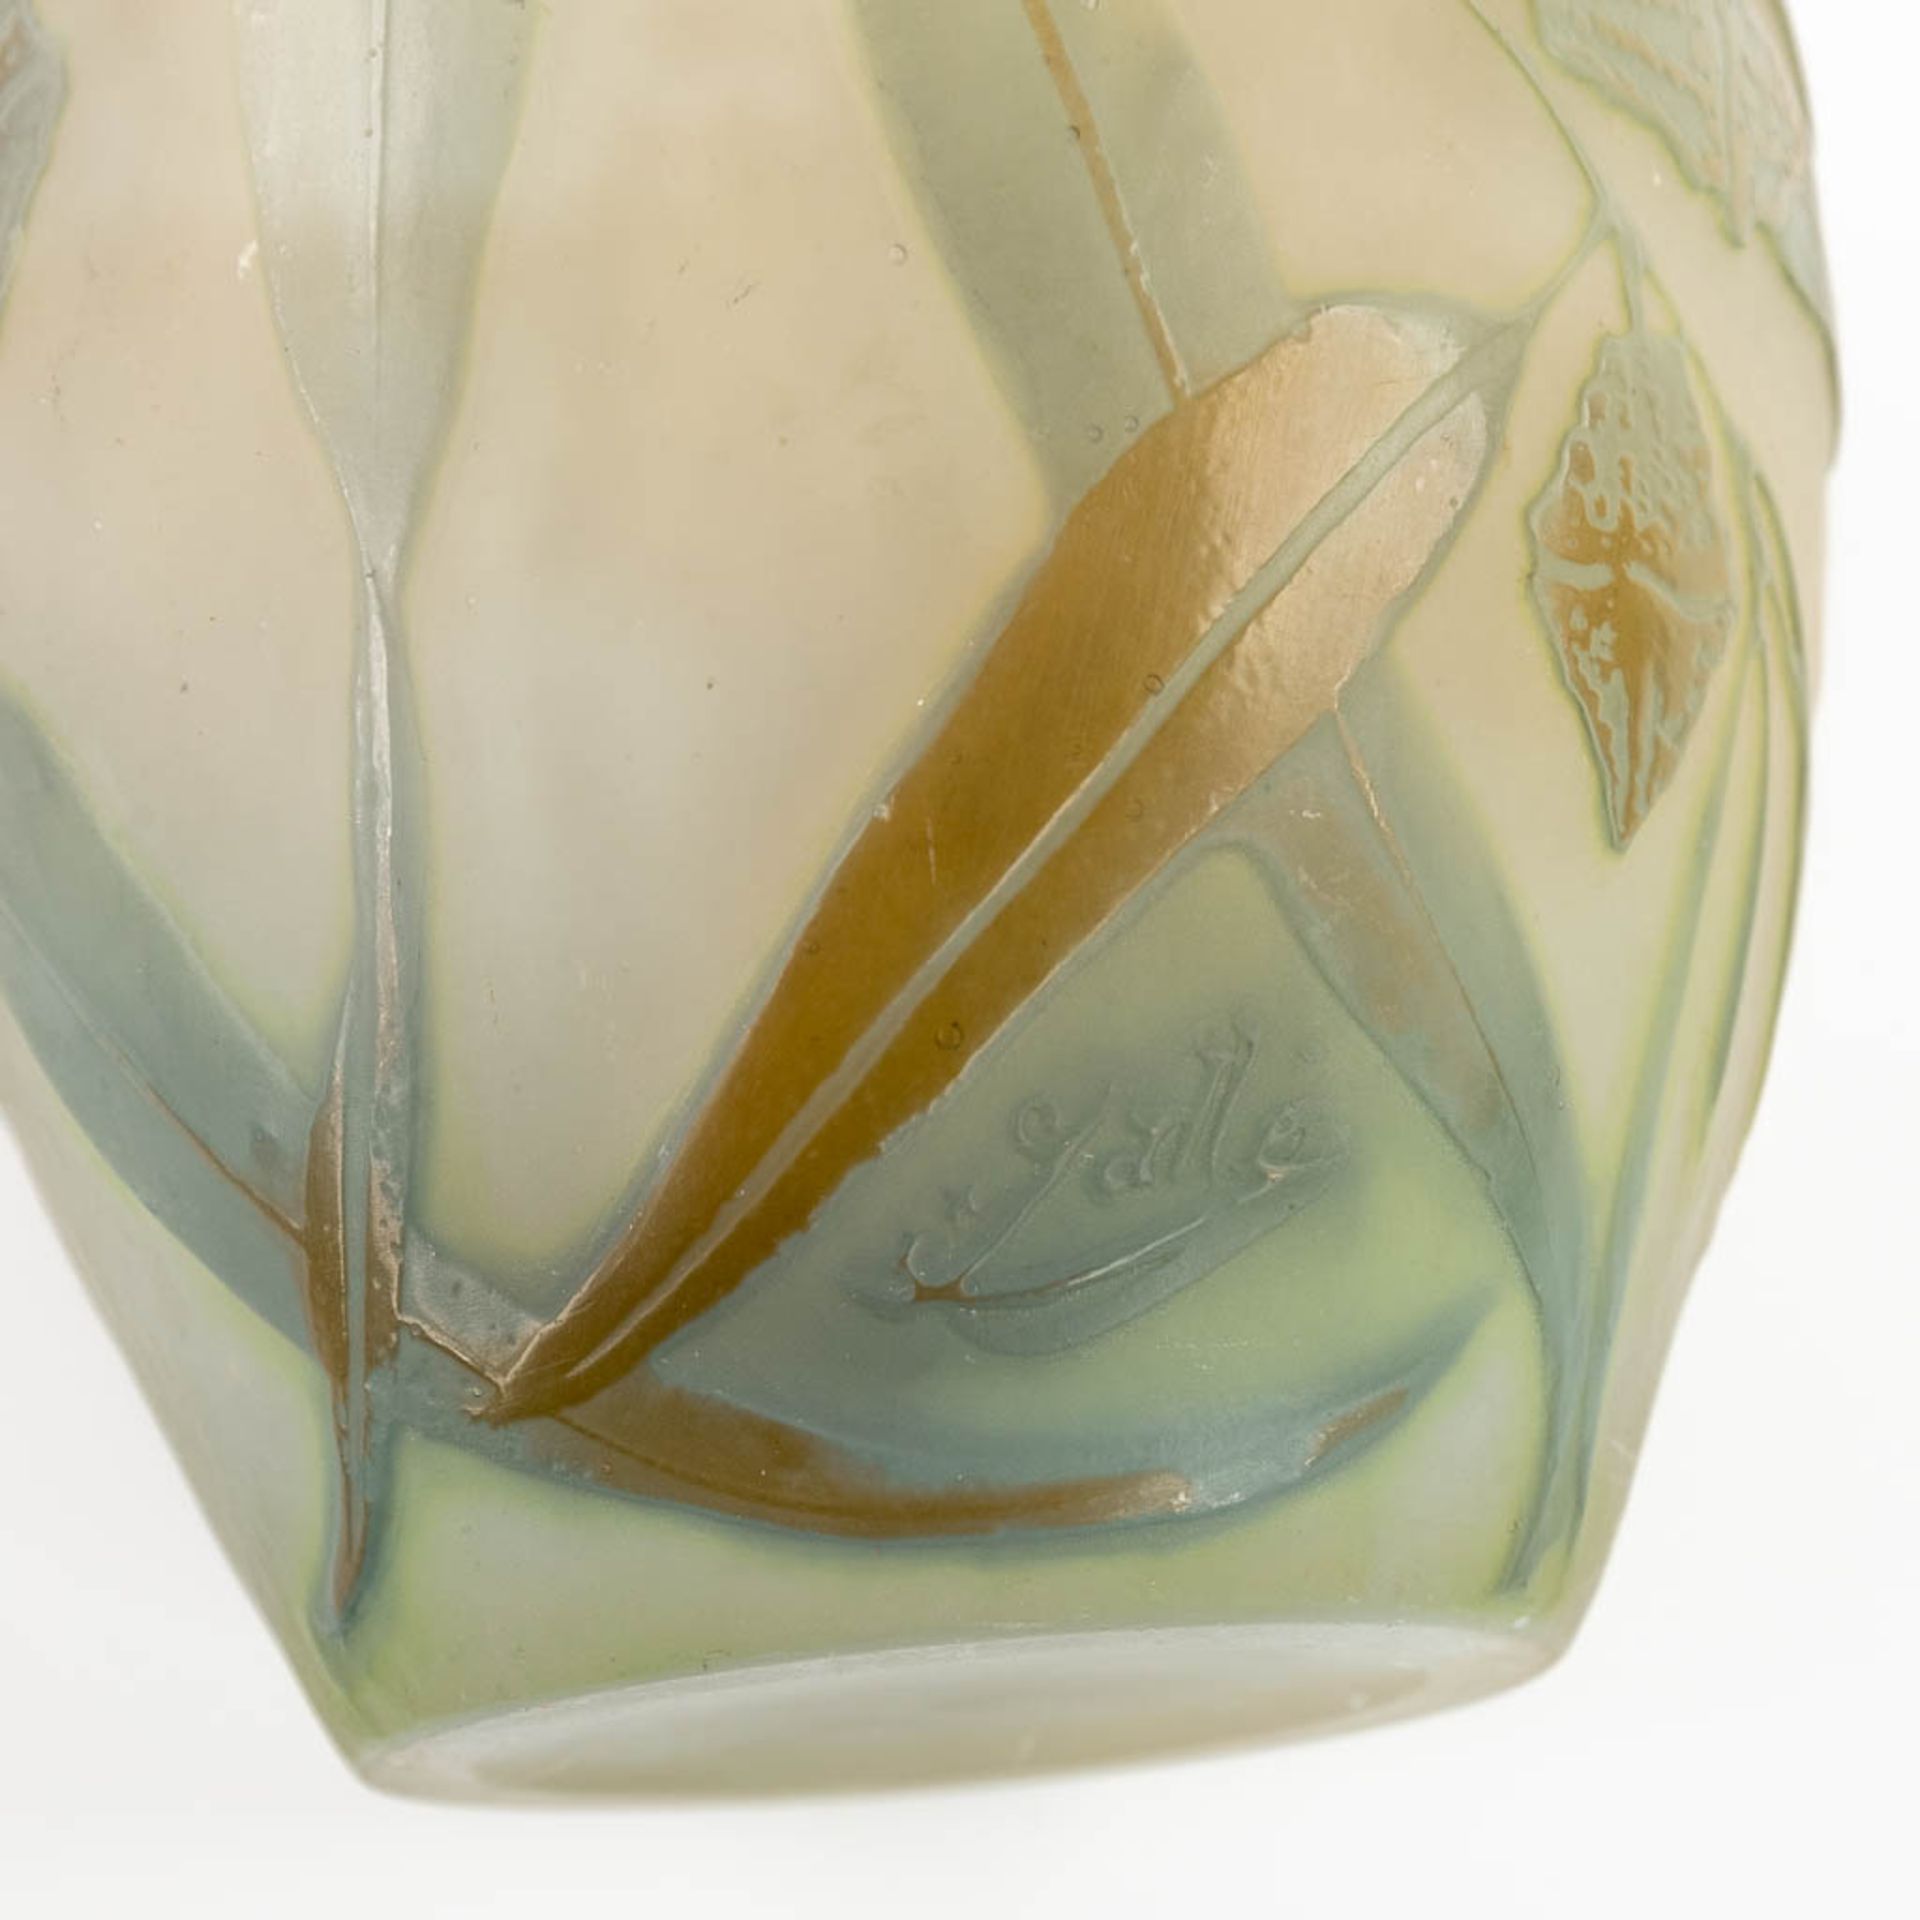 Emile GALLE (1846-1904) 'Vase' pate de verre glass. Circa 1905-1908. (H:18 x D:13 cm) - Bild 9 aus 10